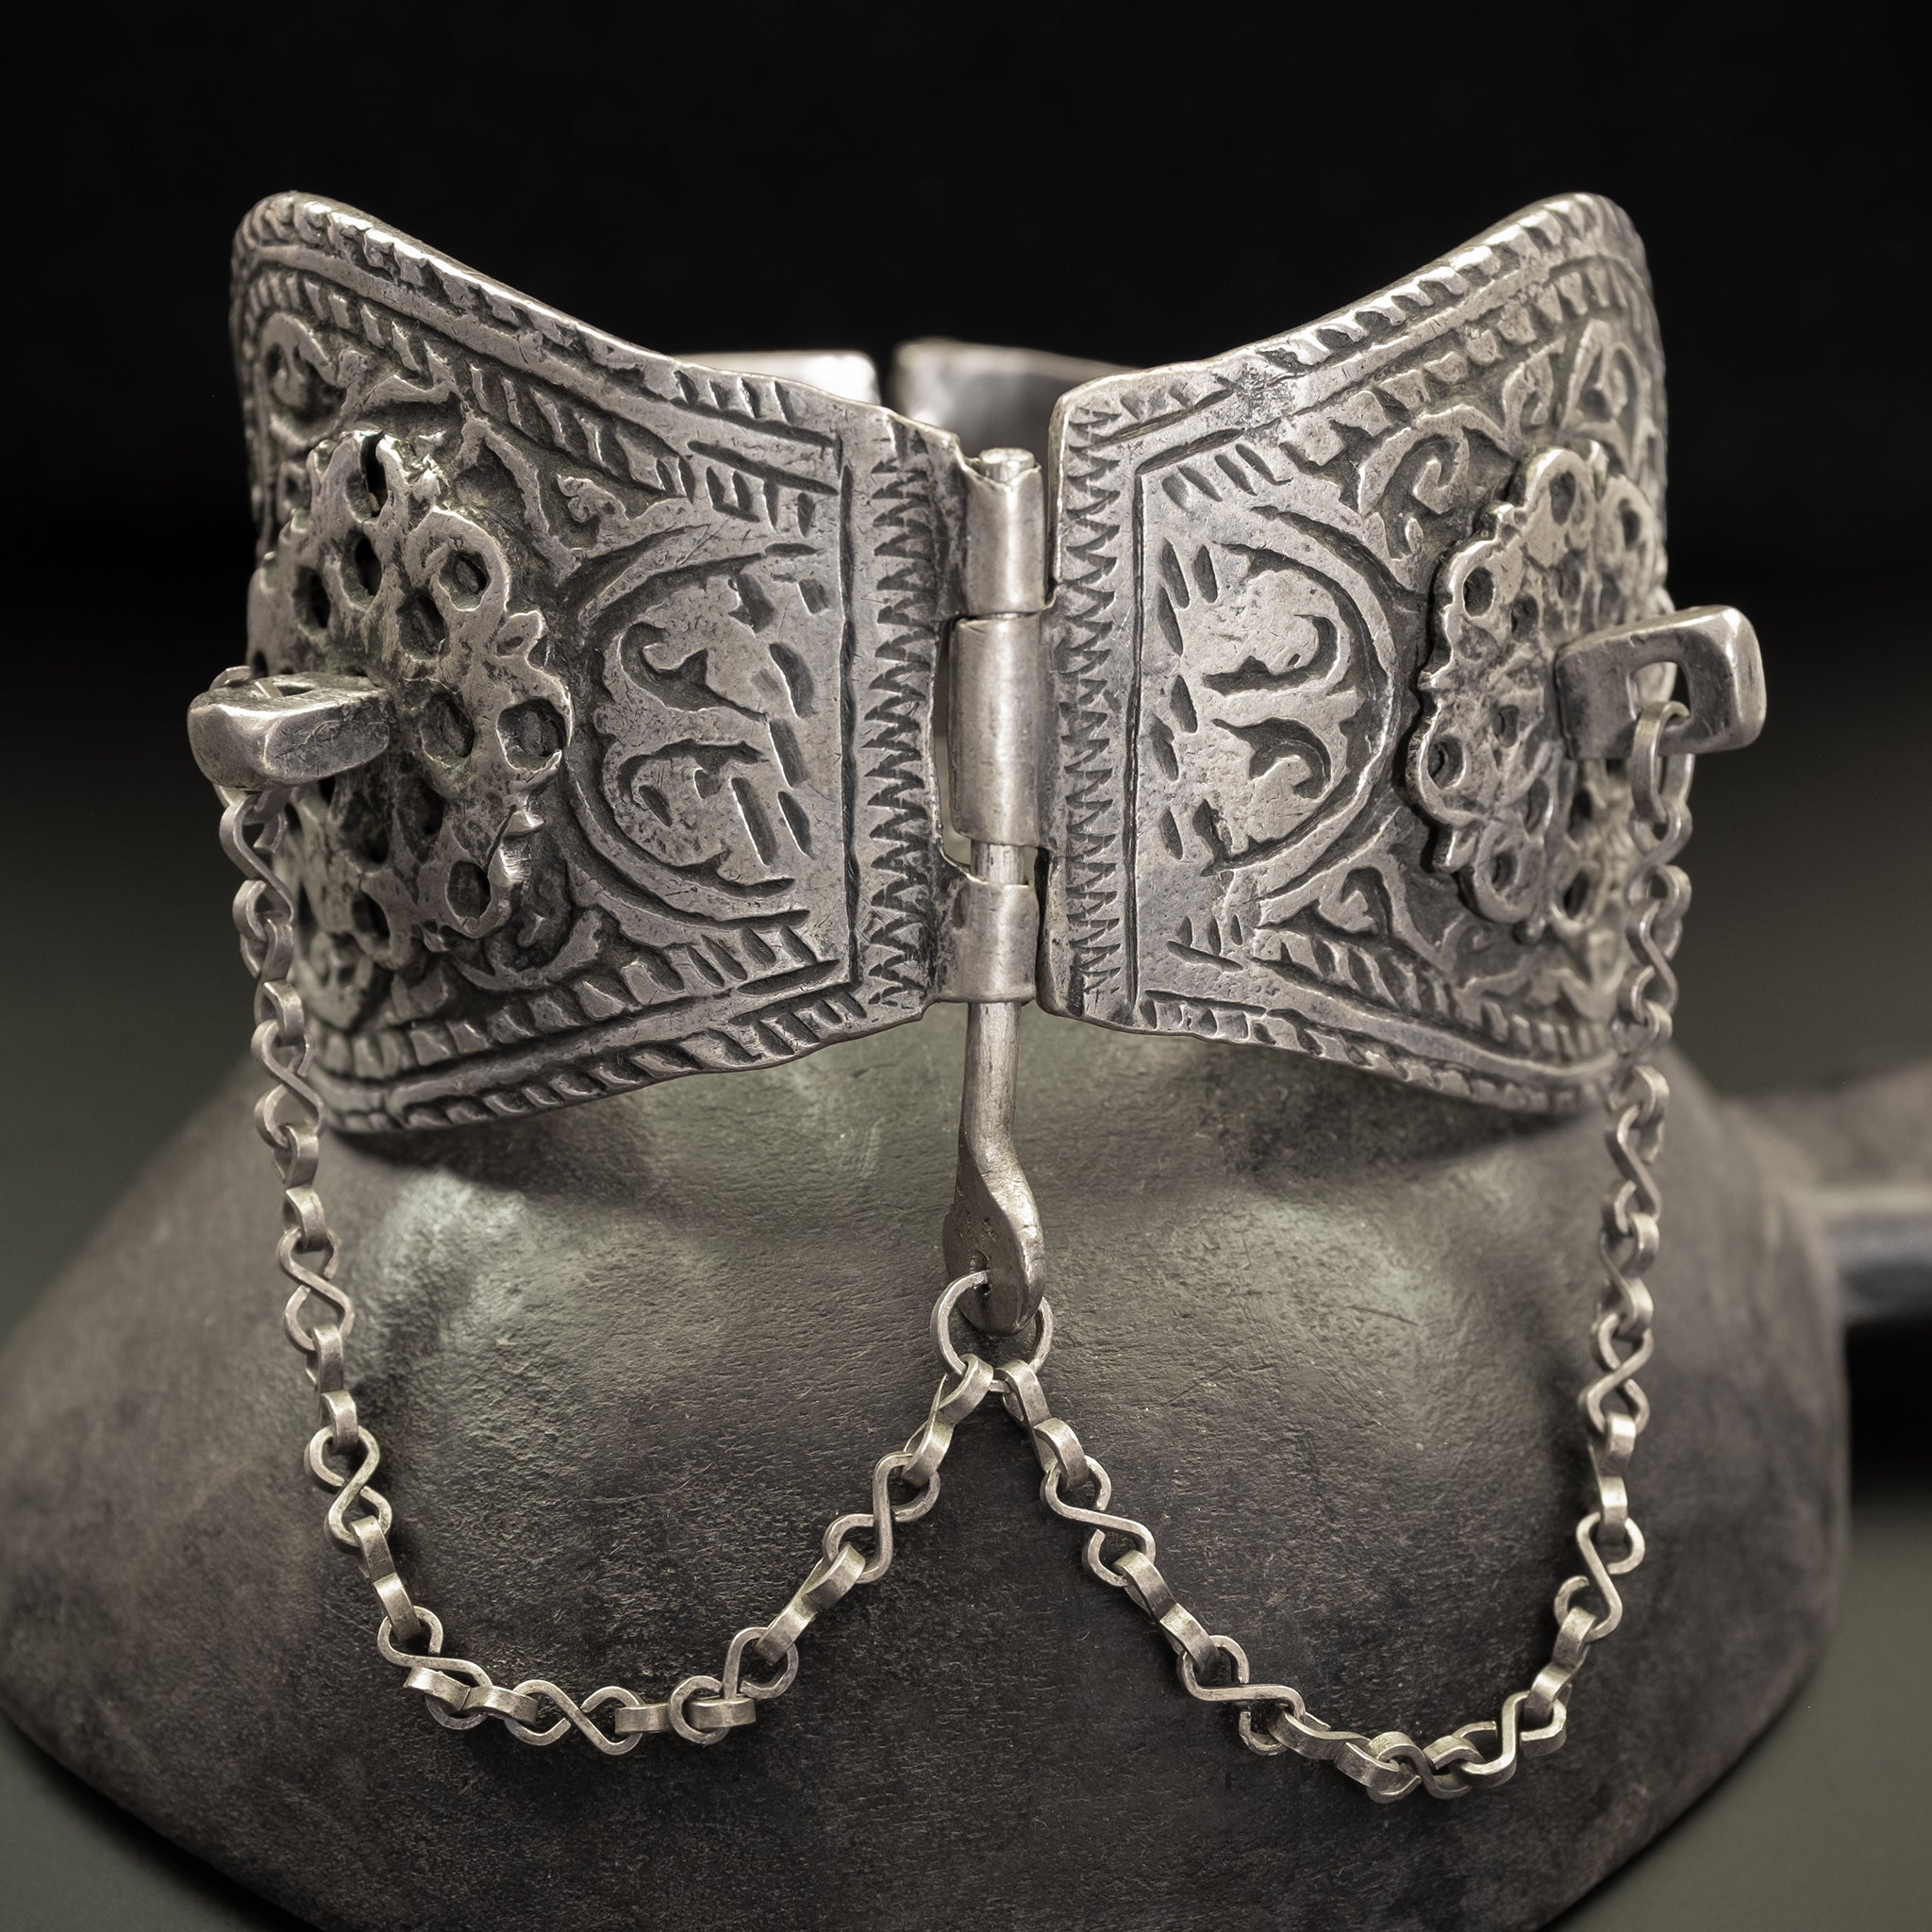 Antique Silver Berber Anklet/Bracelet from Meknès, Morocco